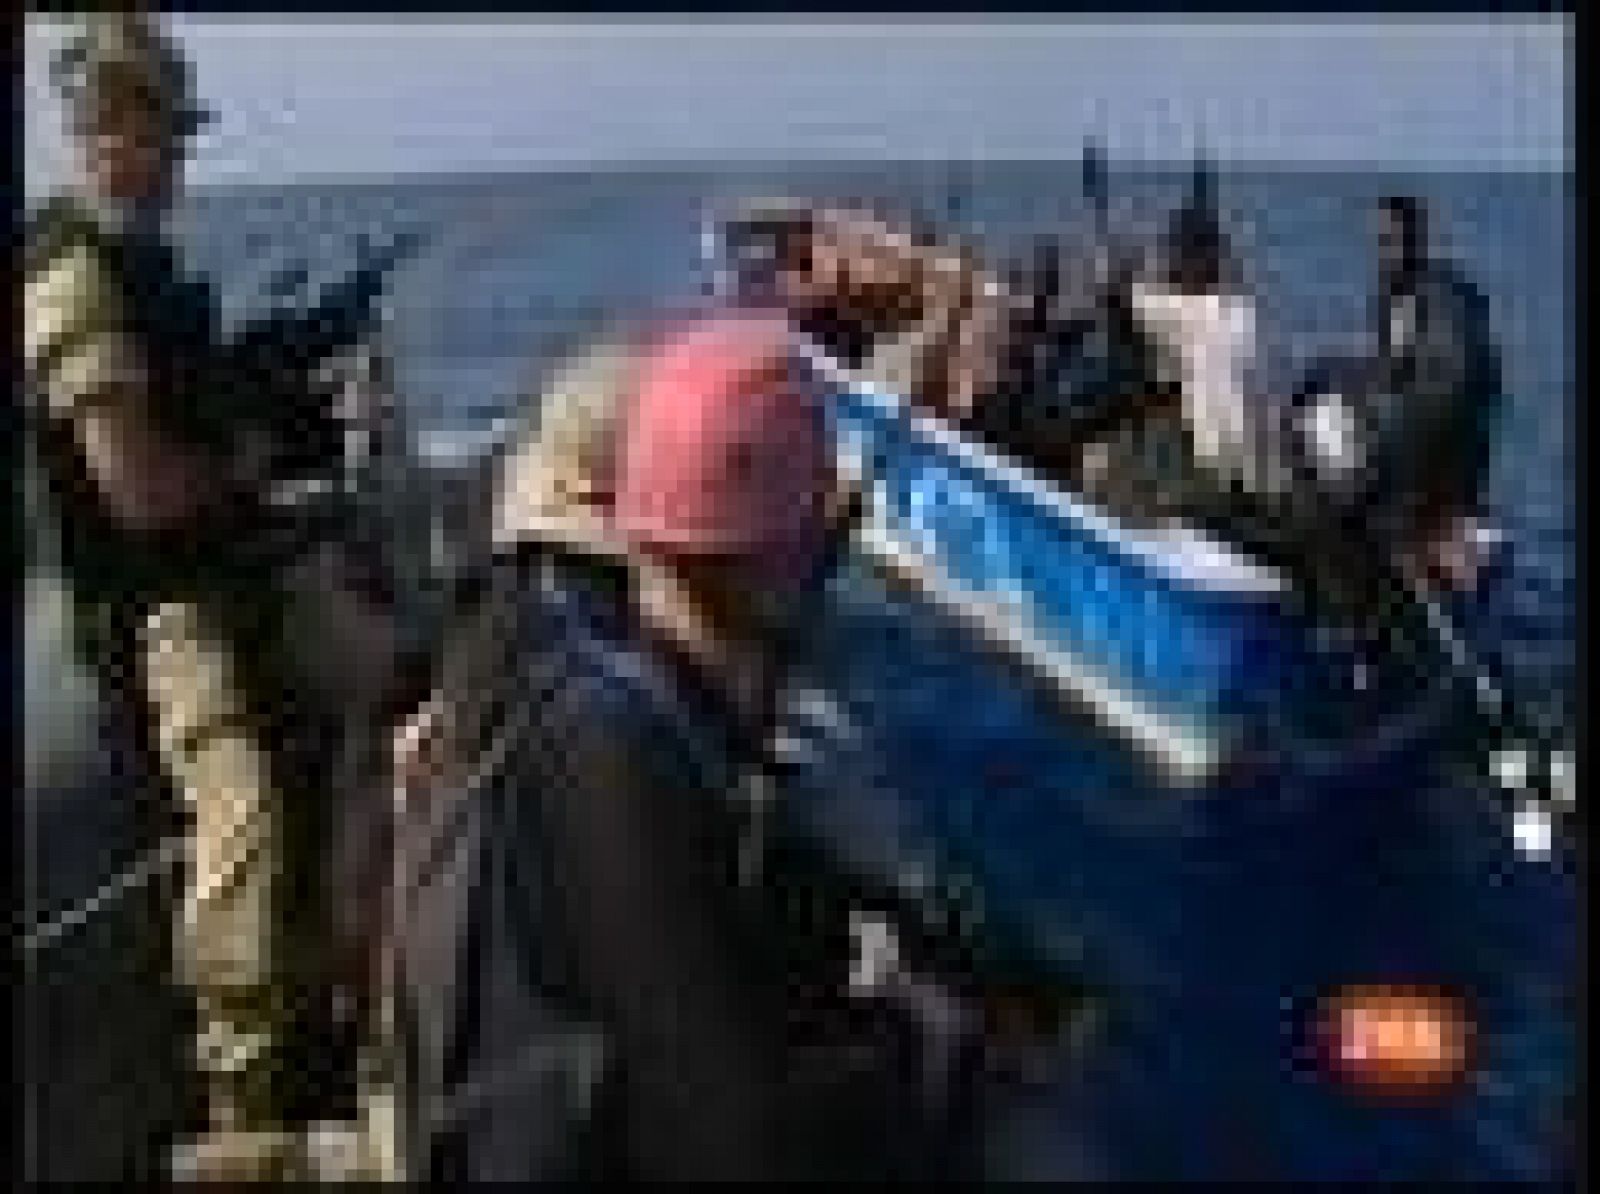 El juez de la Audiencia Nacional Baltasar Garzón ordena el traslado "urgente" a España de los dos piratas que participaron en el secuestro del atunero vasco 'Alakrana' y que fueron detenidos por la fragata 'Canarias' cuando intentaban llegar a las costas de Somalia (06/10/09).